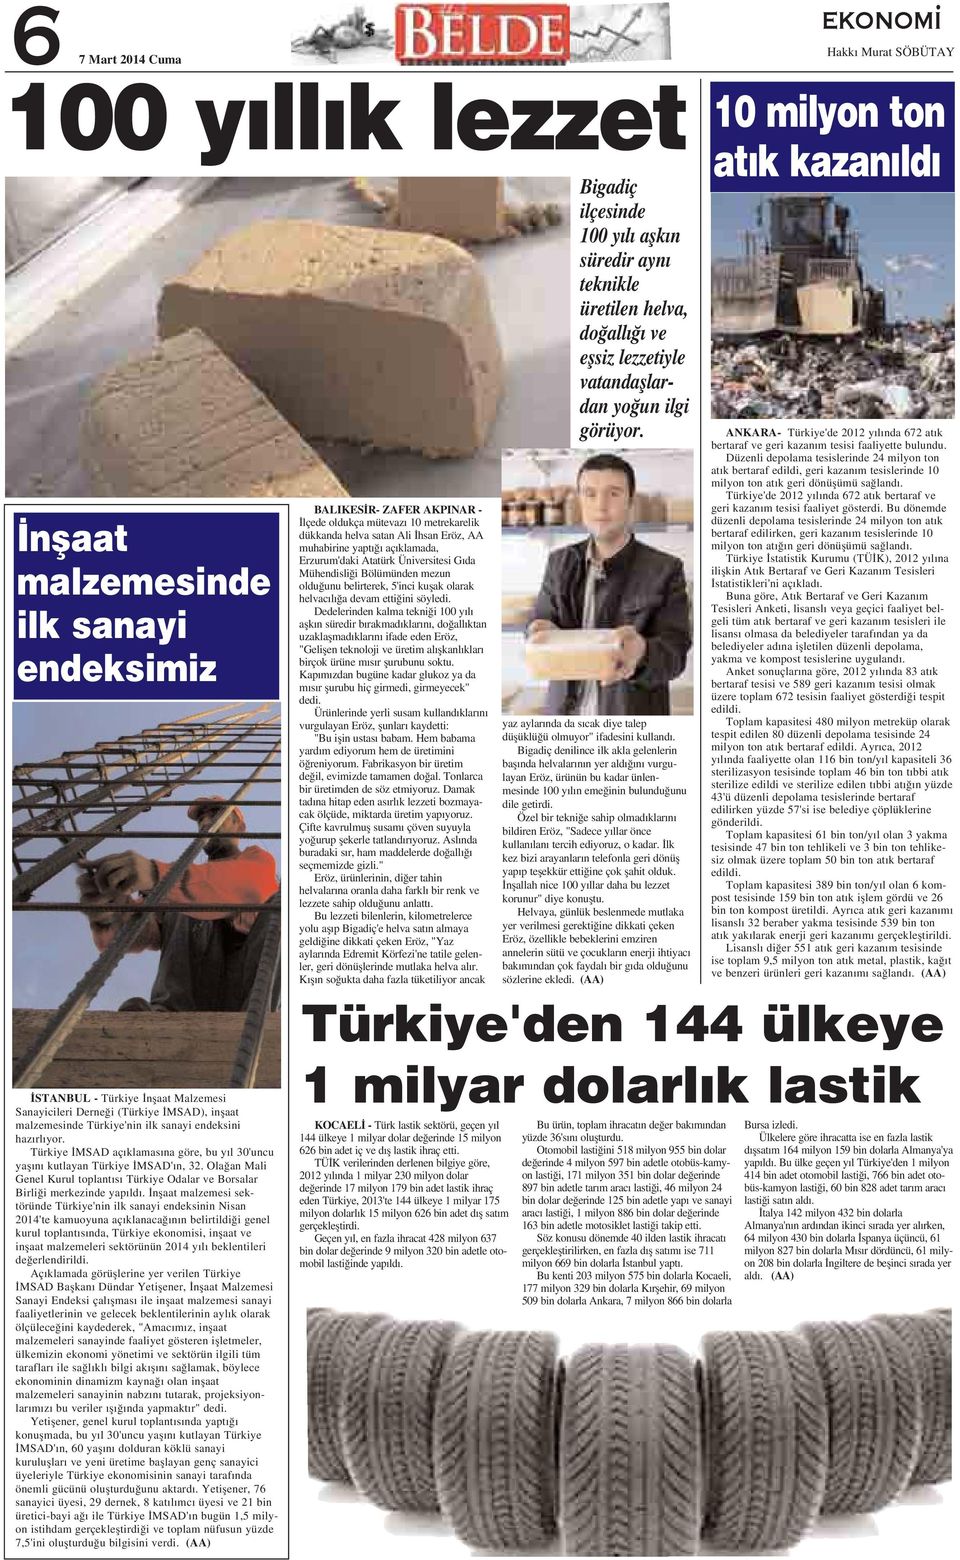 nflaat malzemesi sektöründe Türkiye'nin ilk sanayi endeksinin Nisan 2014'te kamuoyuna aç klanaca n n belirtildi i genel kurul toplant s nda, Türkiye ekonomisi, inflaat ve inflaat malzemeleri